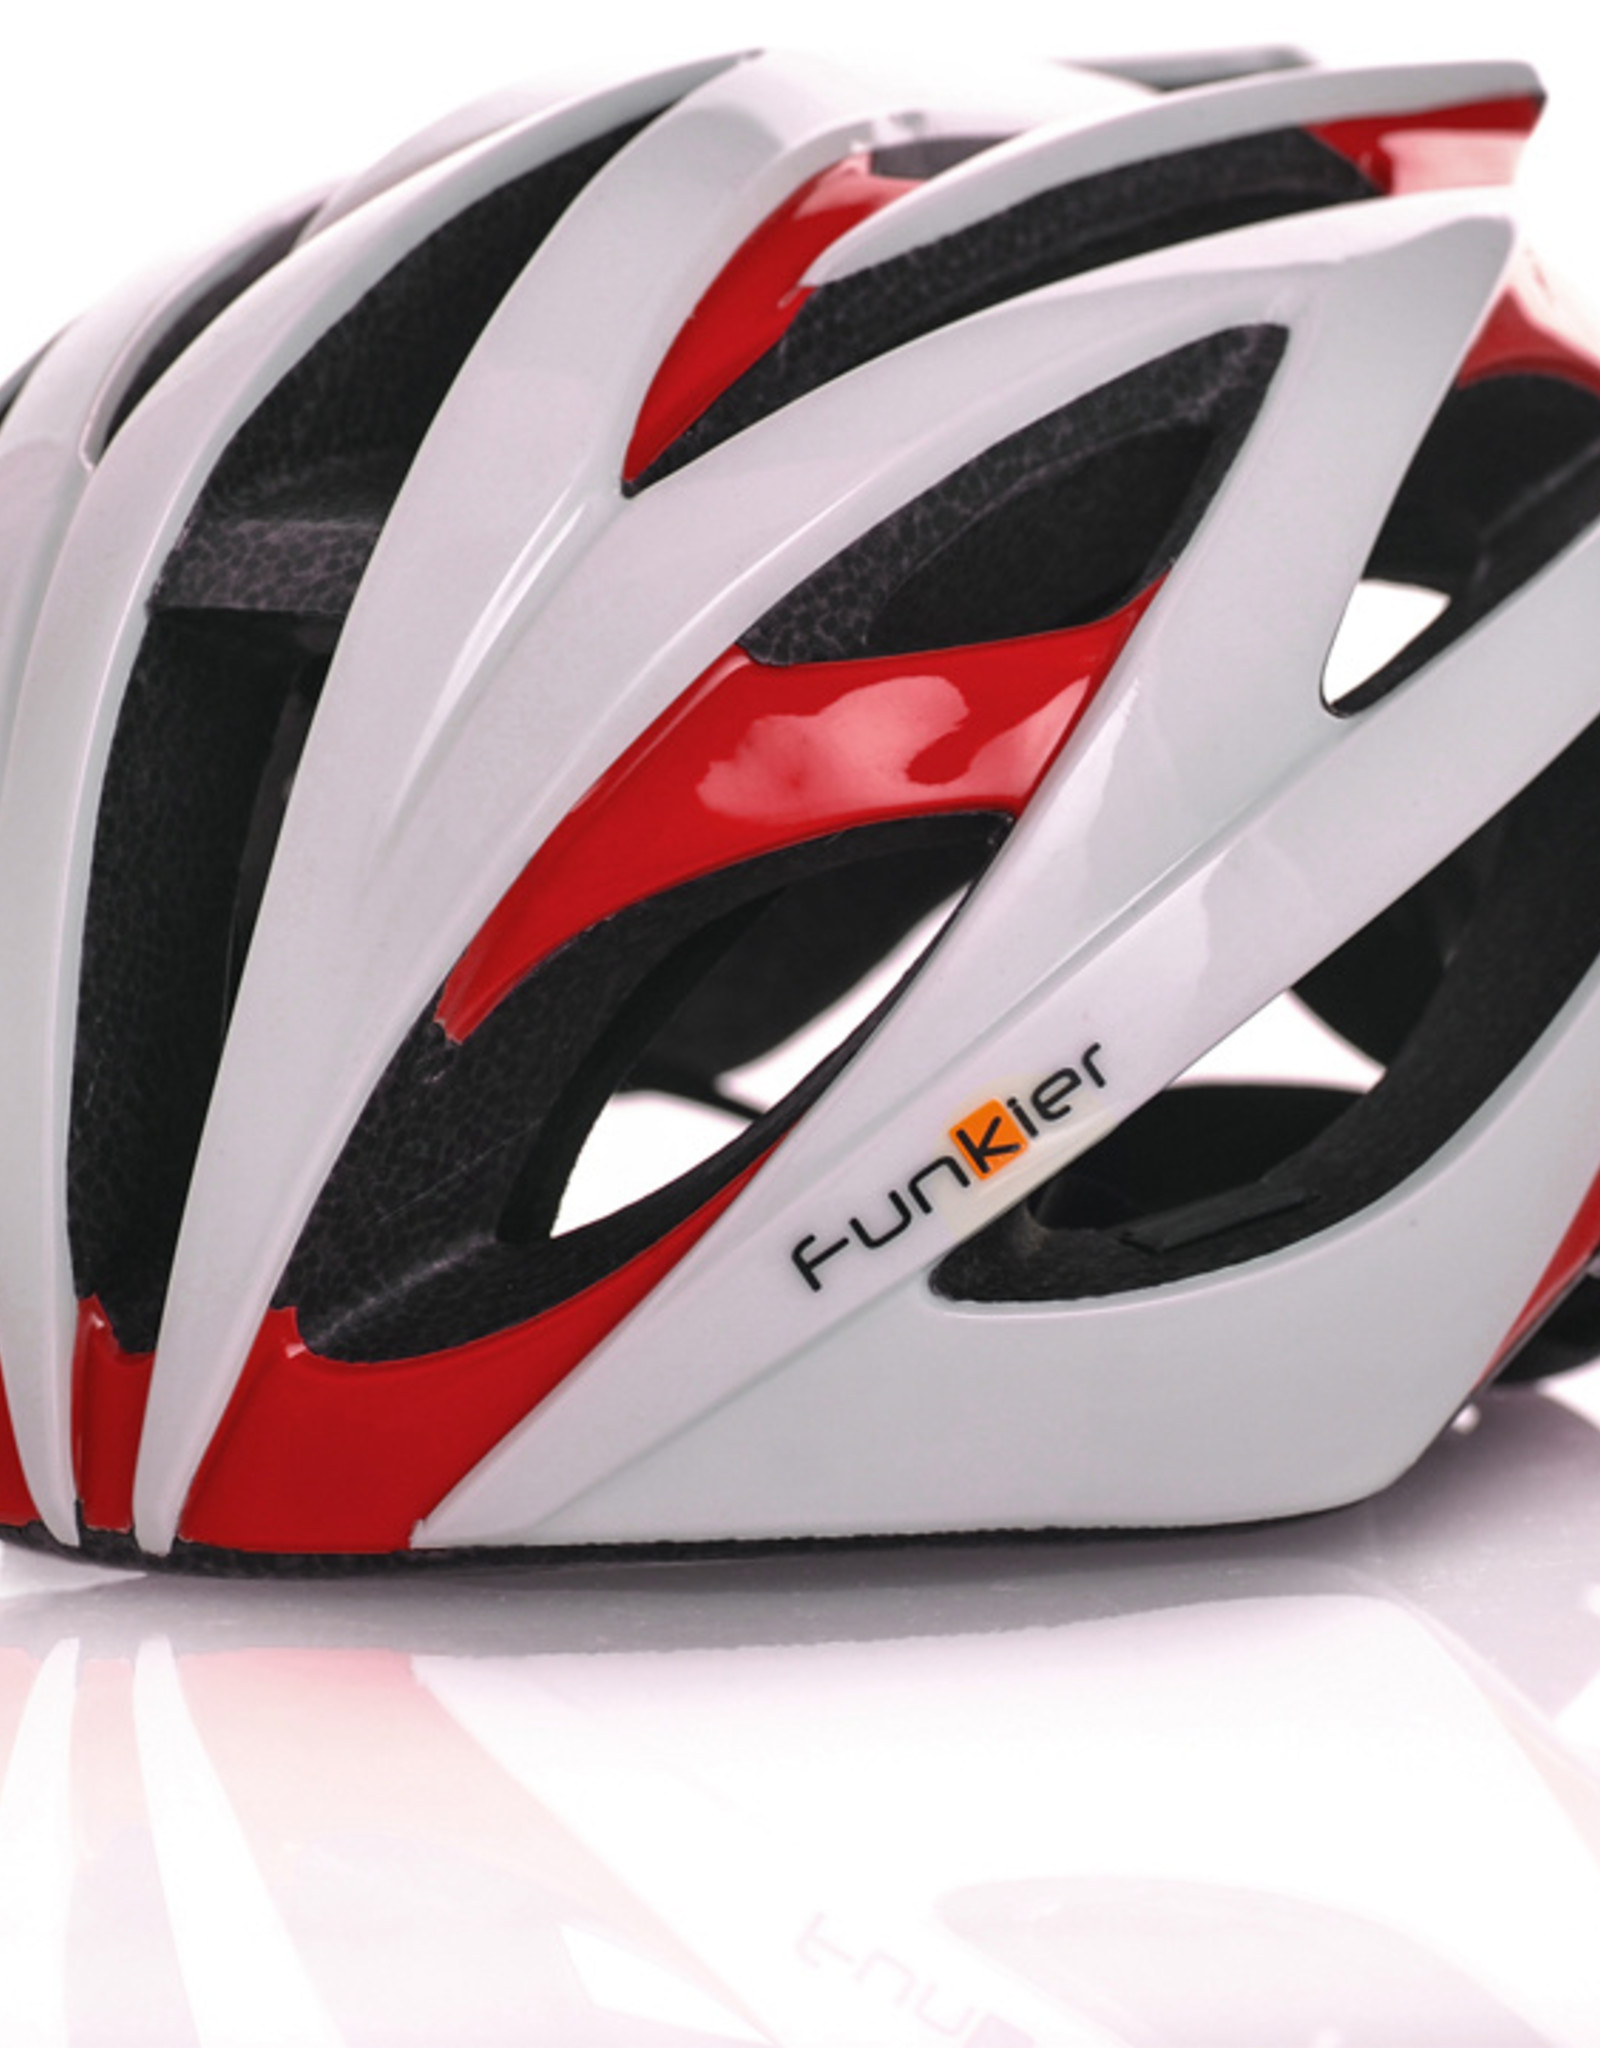 Funkier Tejat Road Elite Helmet in White/Red